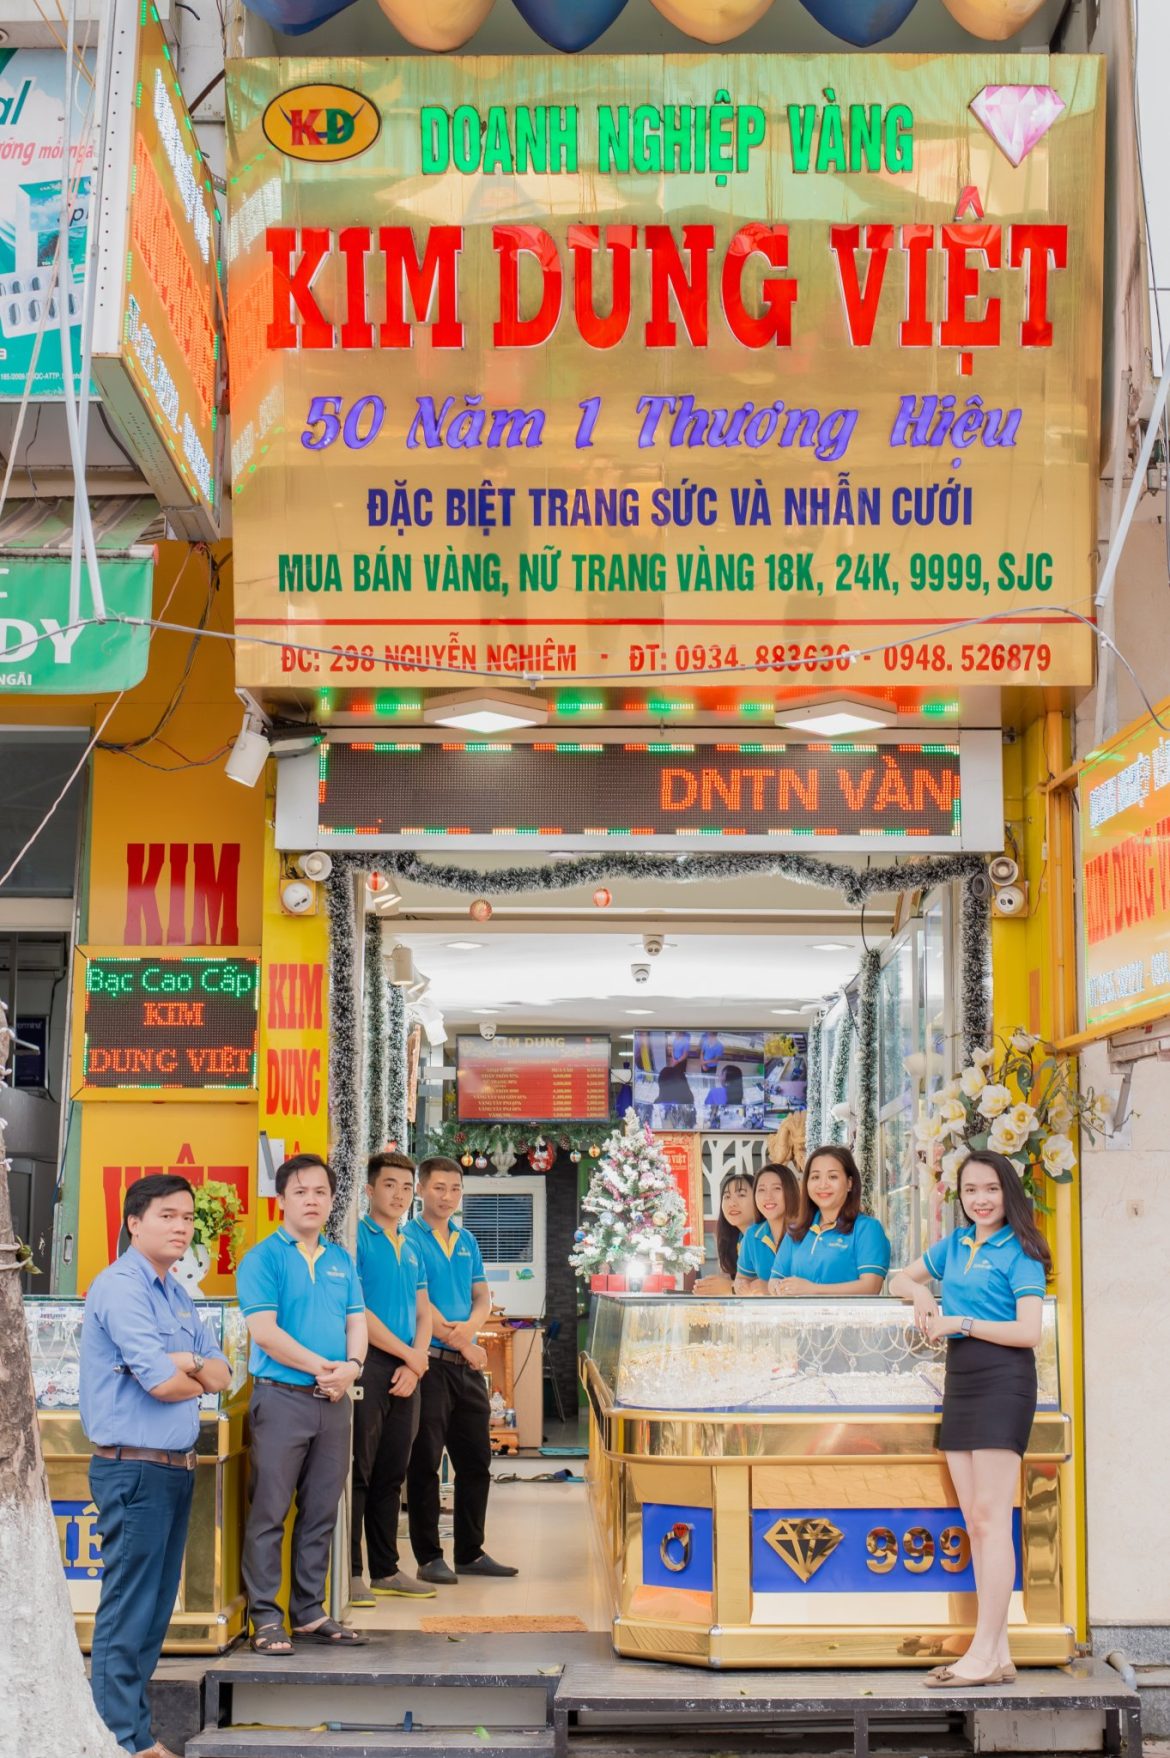 Tiệm Vàng Kim Dung Việt Thương Hiệu 50 Năm – Uy Tín Chất Lượng Tại Quảng Ngãi